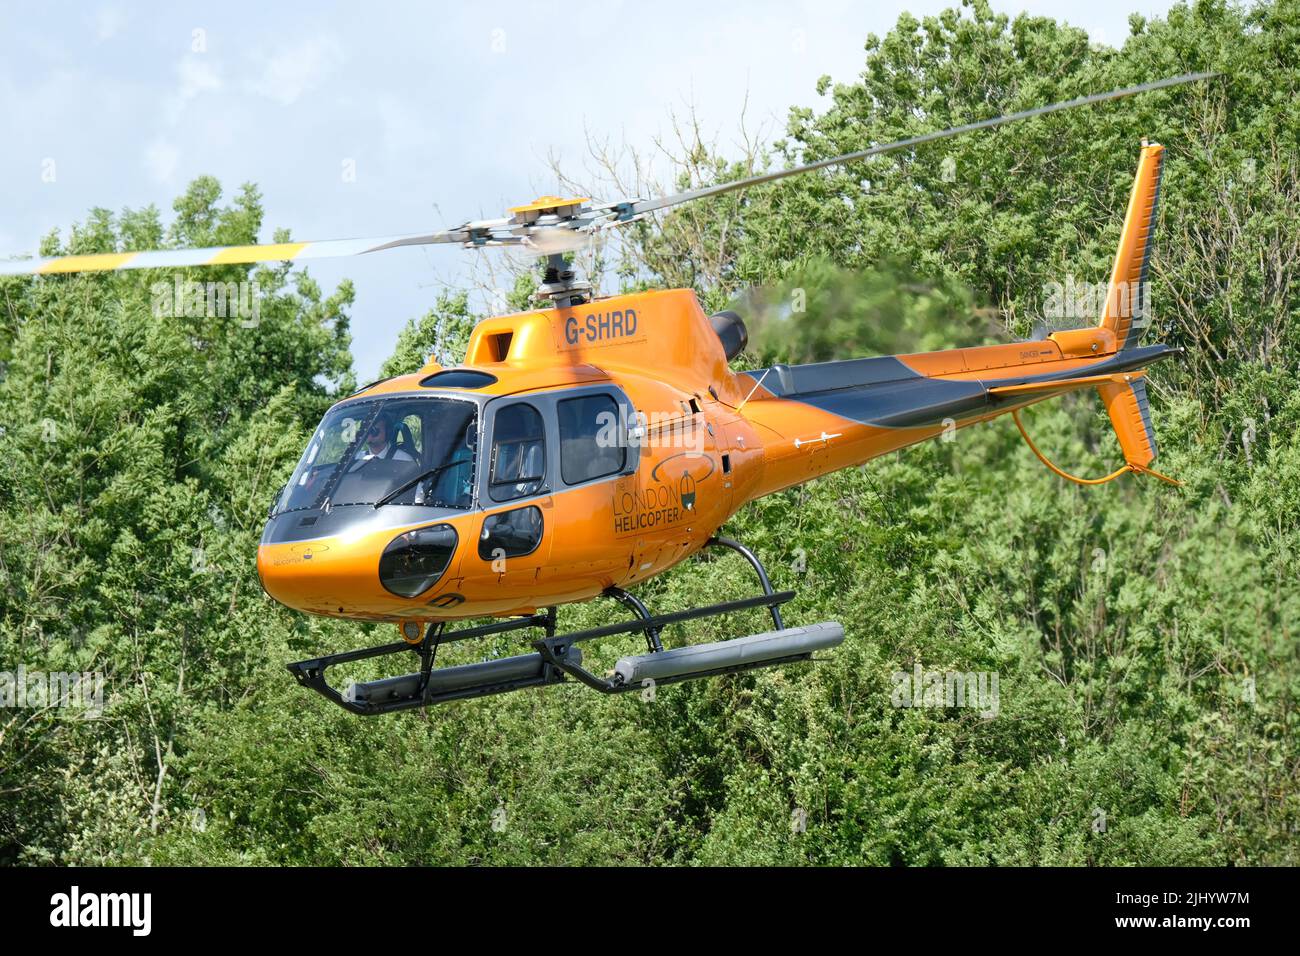 Helicóptero Eurocopter AS 350 Squrrel que despega operado por helicópteros Londres registro G-SHRD Foto de stock